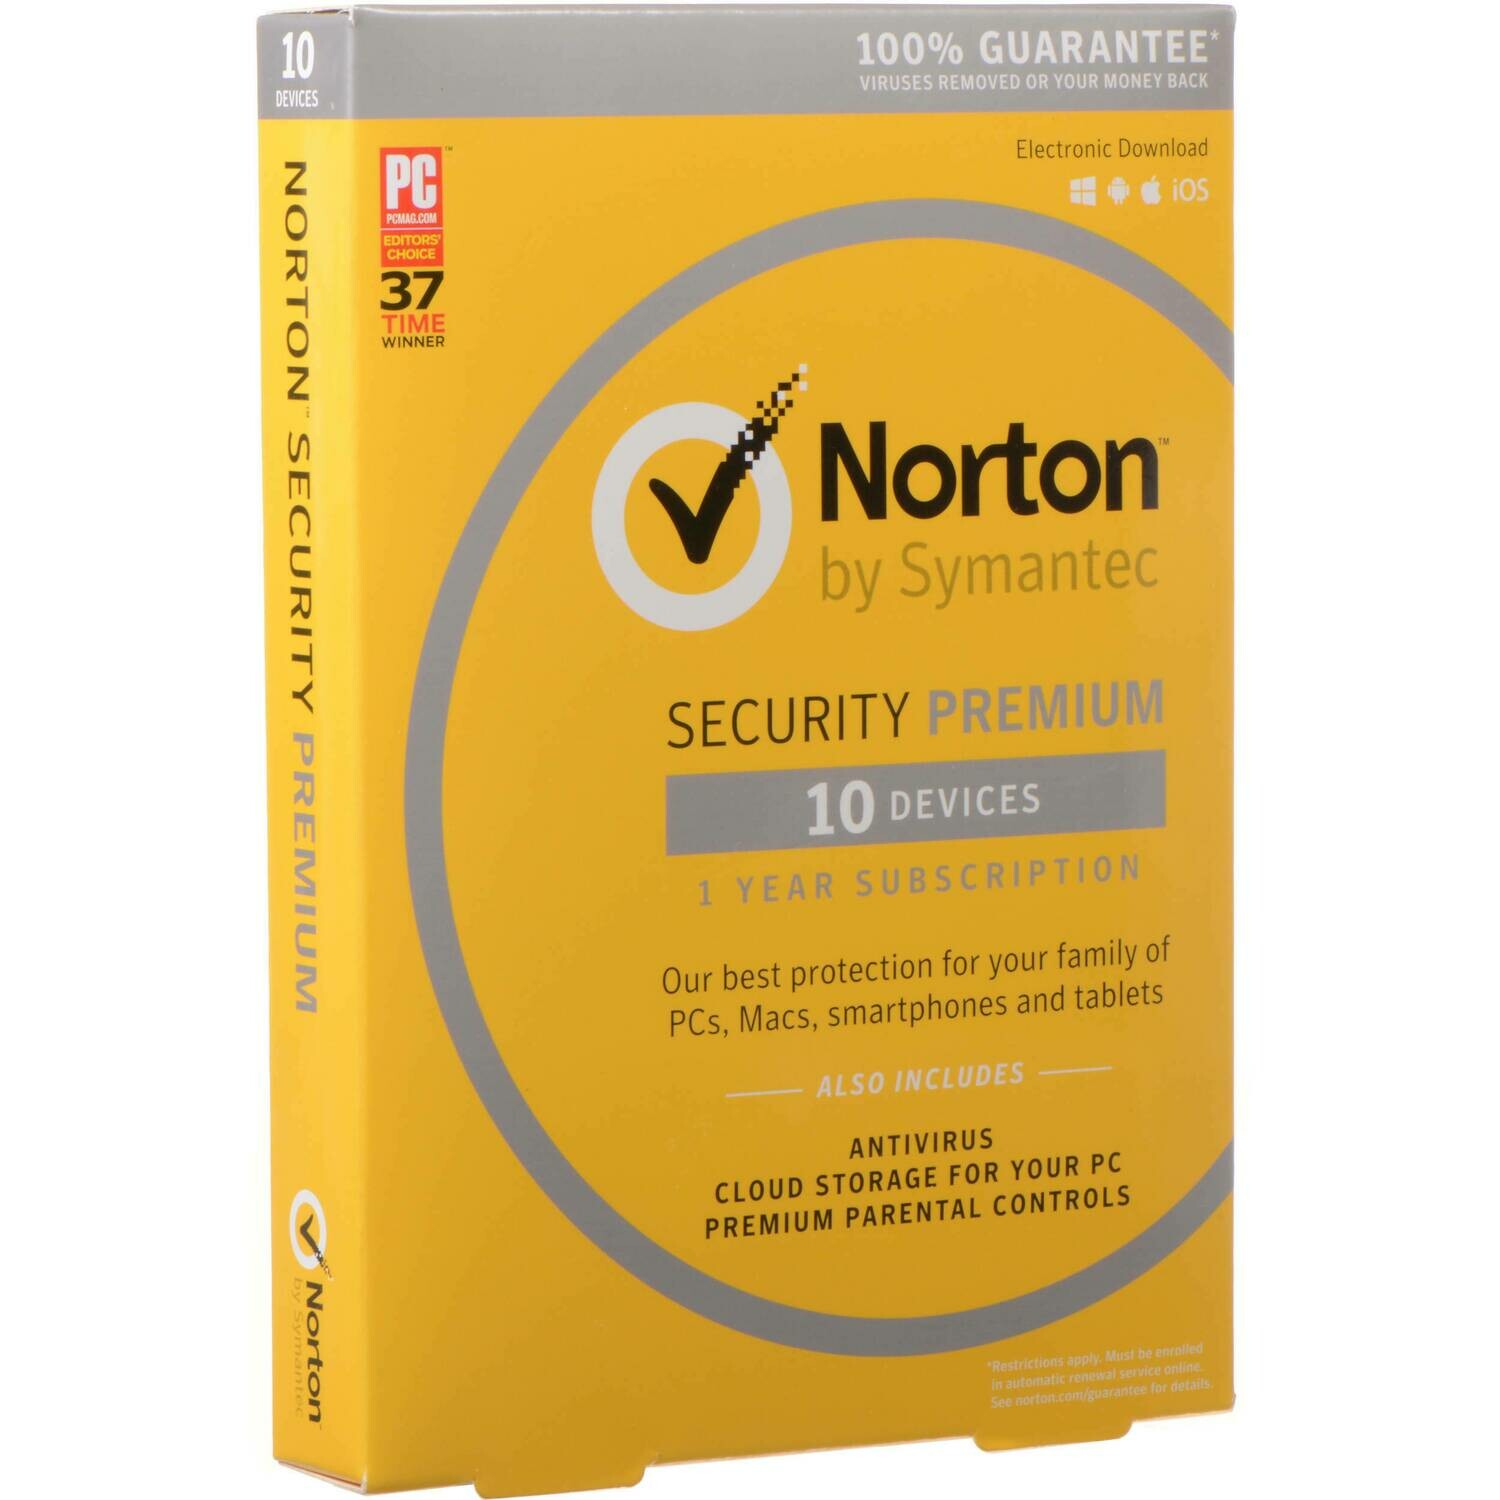 norton security premium - 10 devices